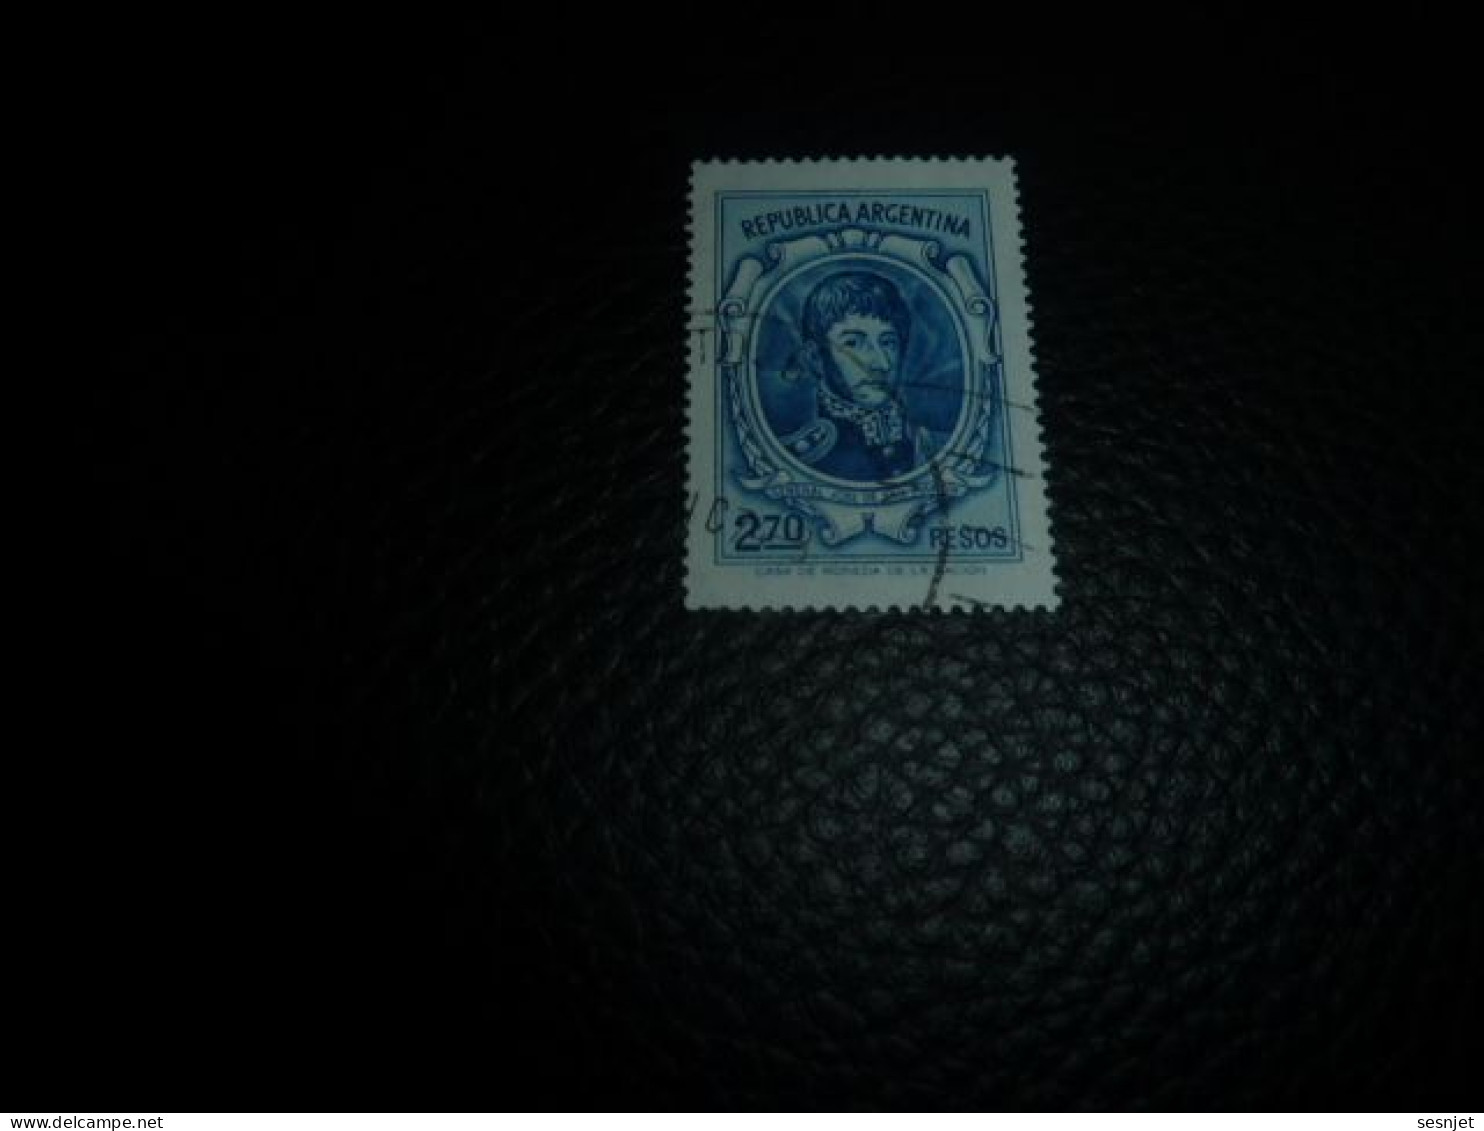 Republica Argentina - Général José De San Martin - 2.70 Pesos - Yt 975 - Bleu - Oblitéré - Année 1974 - - Usati